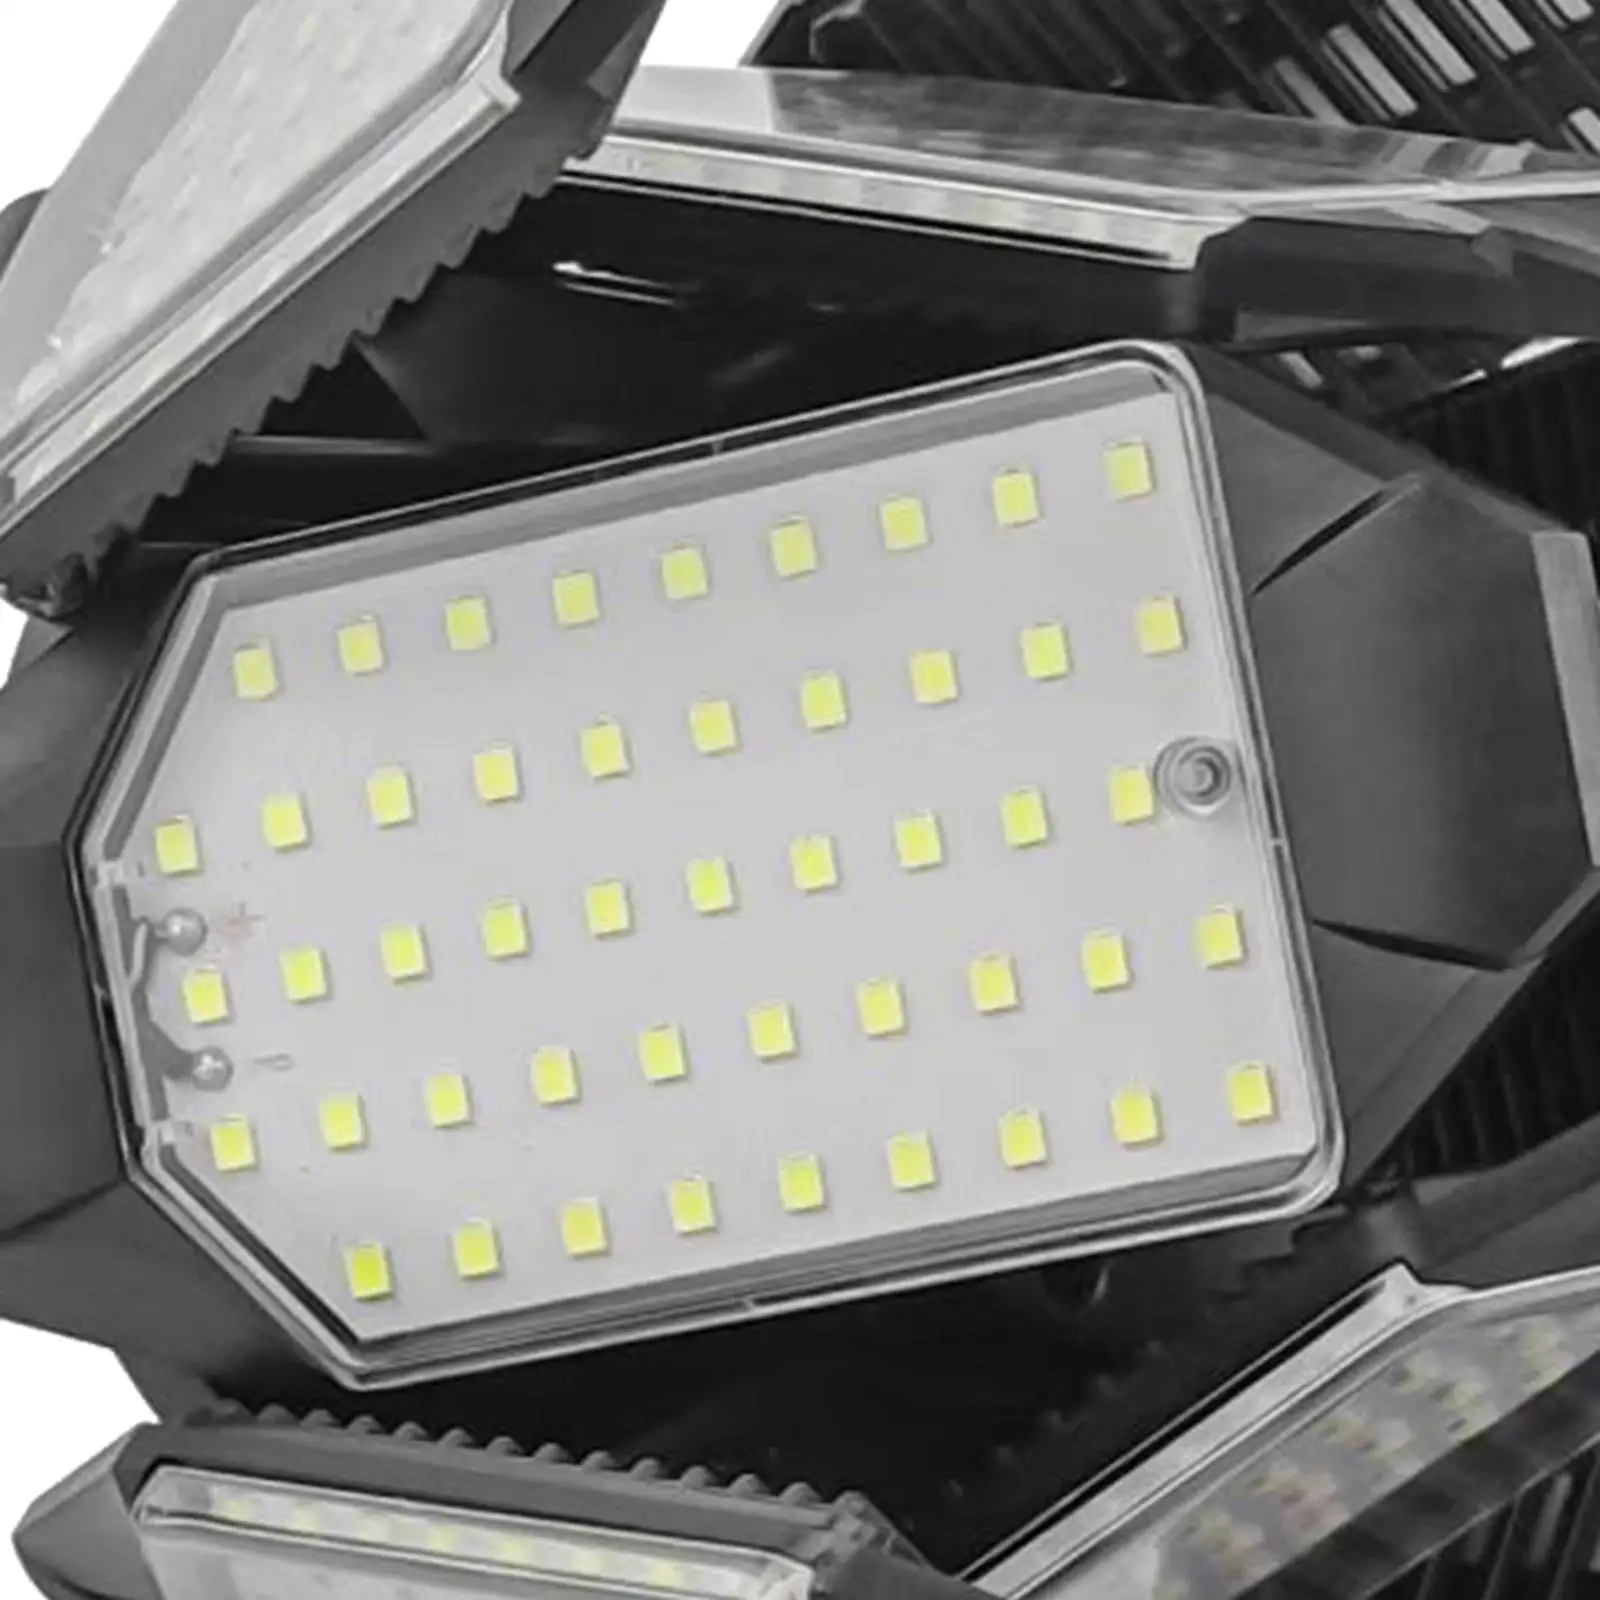 60W LED Garage Ceiling Light Industrial Lighting Deformable with 8 Adjustable Panel Folding Lights Garage Ceiling Light